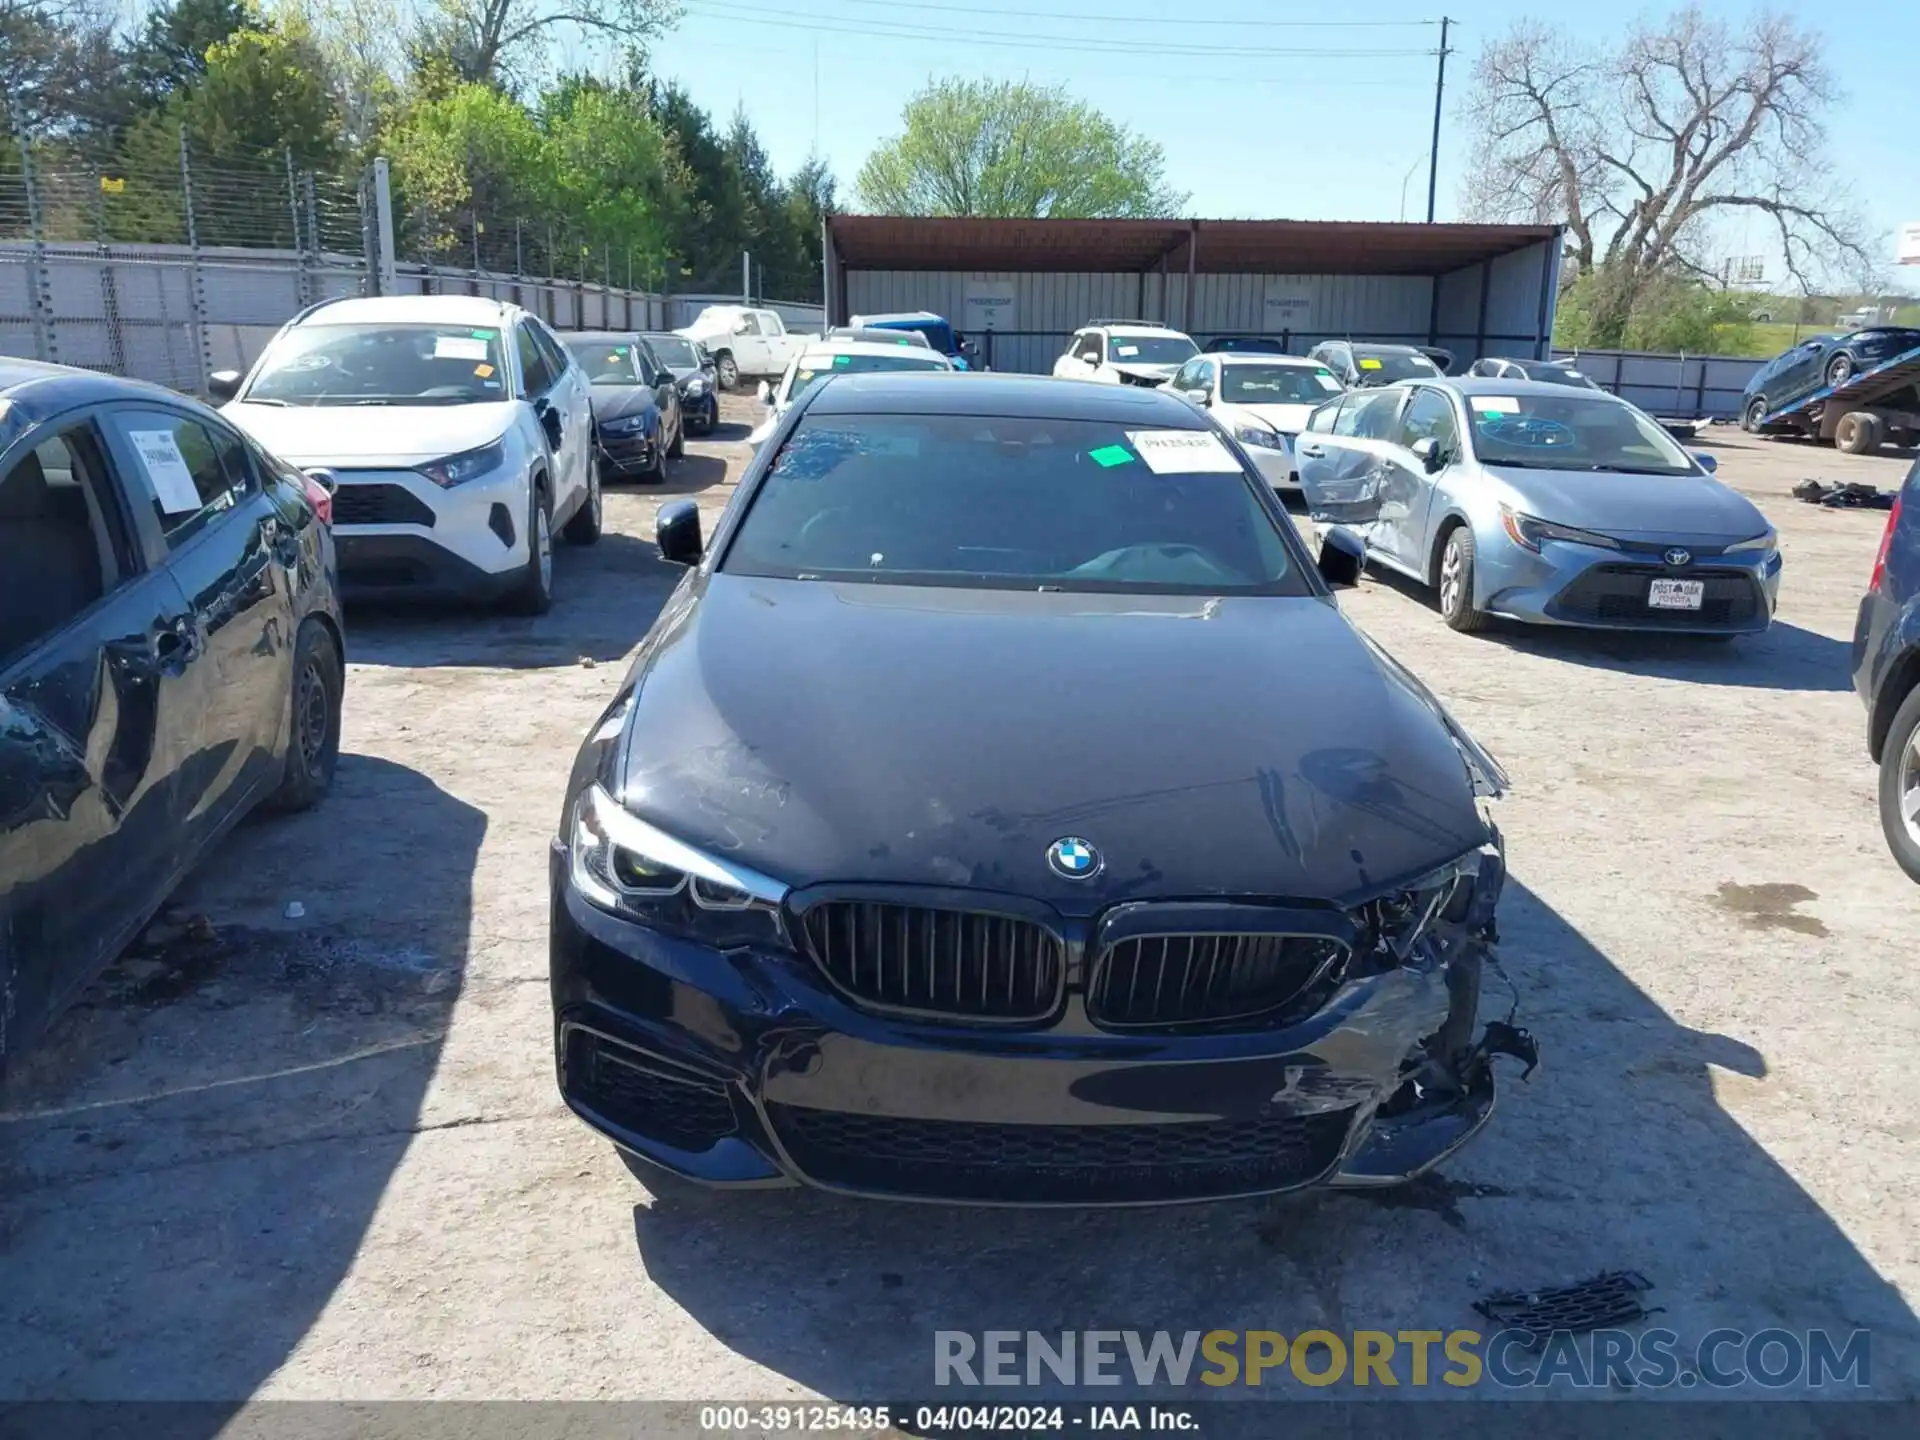 12 Photograph of a damaged car WBAJR7C08LCE14970 BMW 530I 2020